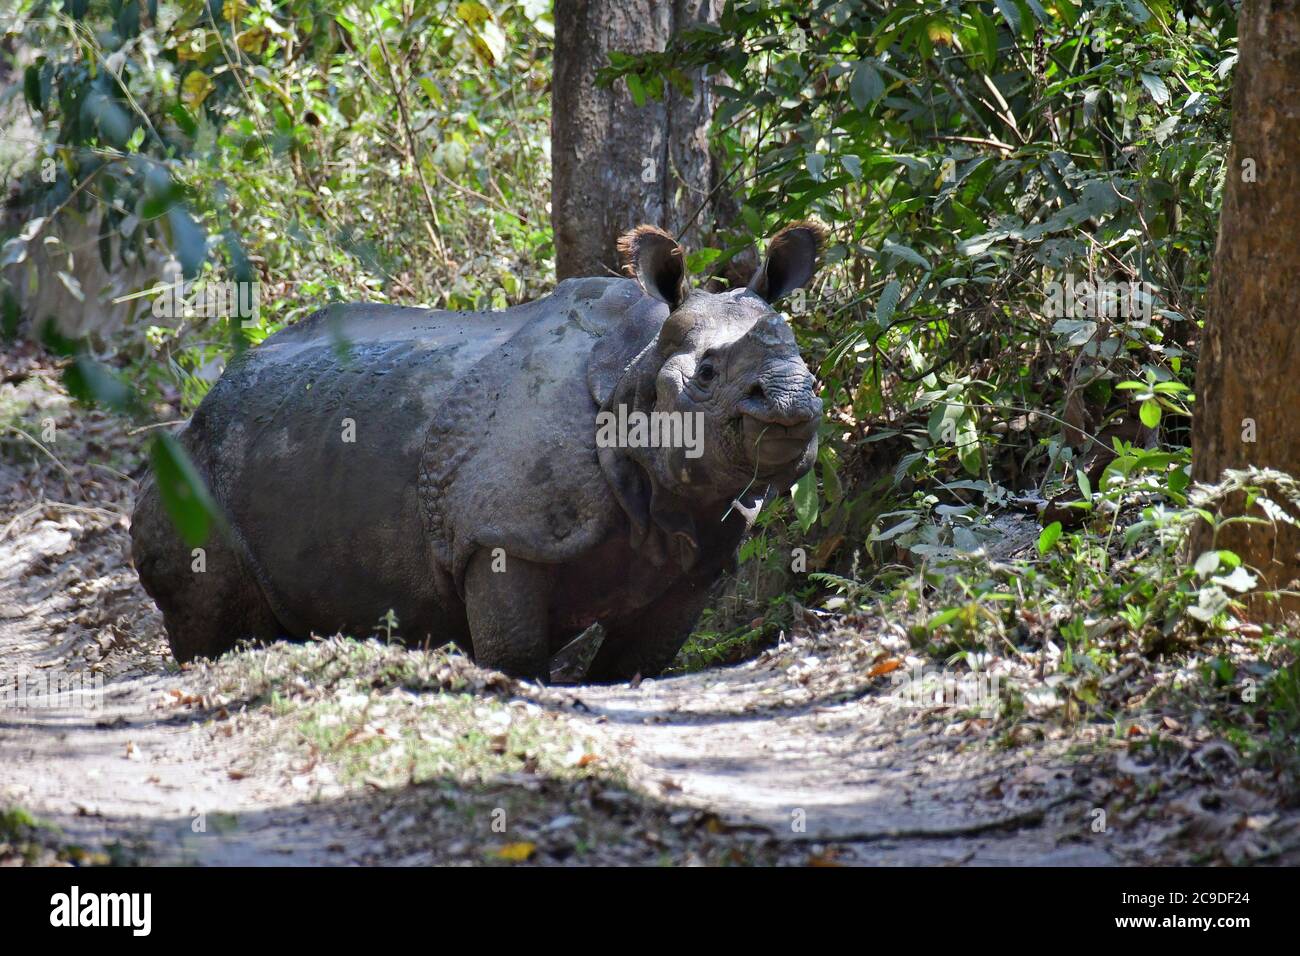 Rhinocéros indien, Panzernashorn, Rhinoceros unicornis, parc national de Chitwan, Népal, Site du patrimoine mondial de l'UNESCO Banque D'Images